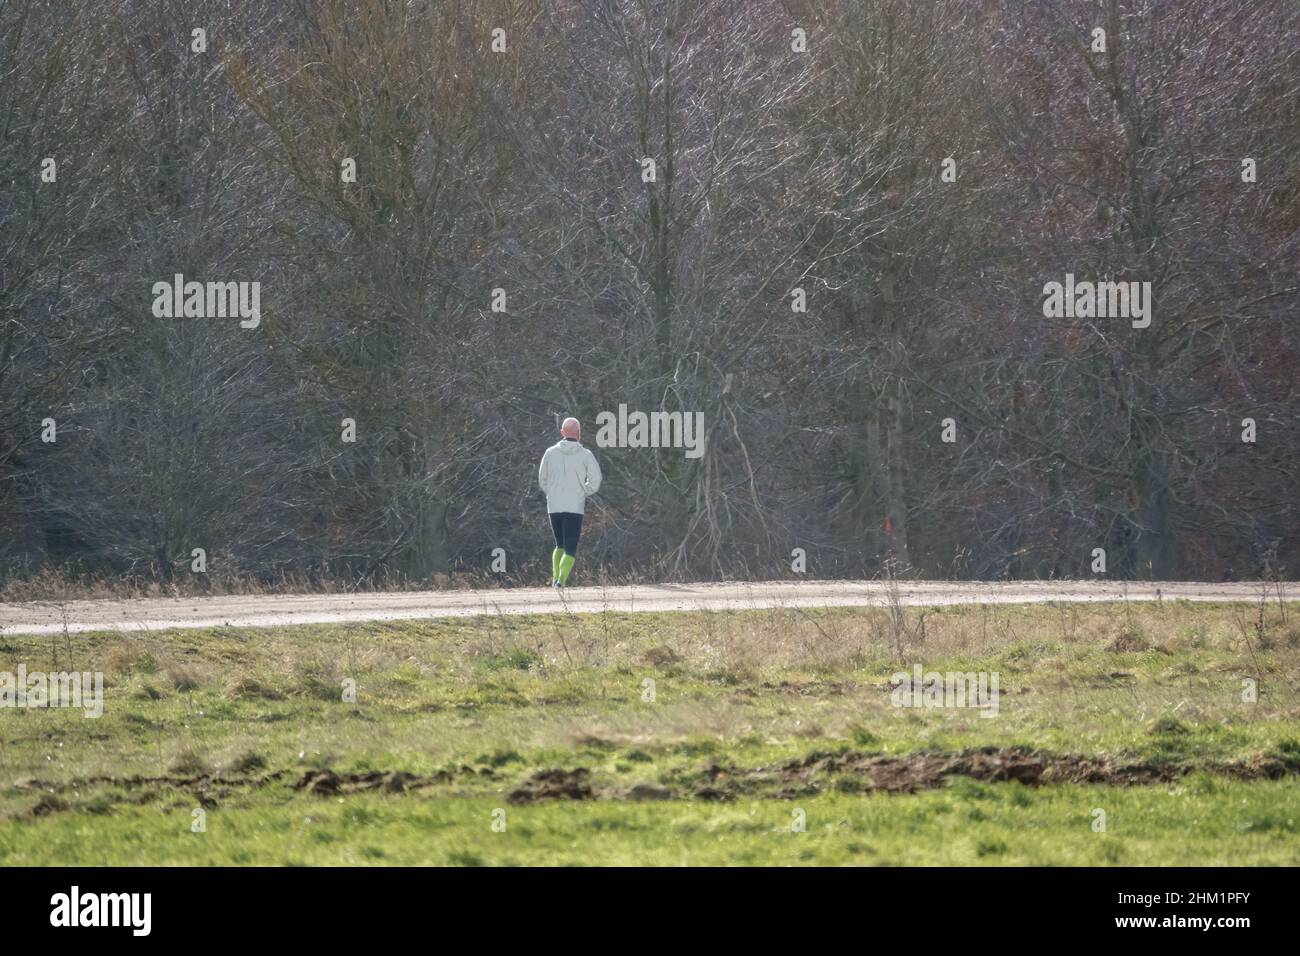 homme portant des chaussettes haute visibilité qui jogging sur une piste non faite Banque D'Images